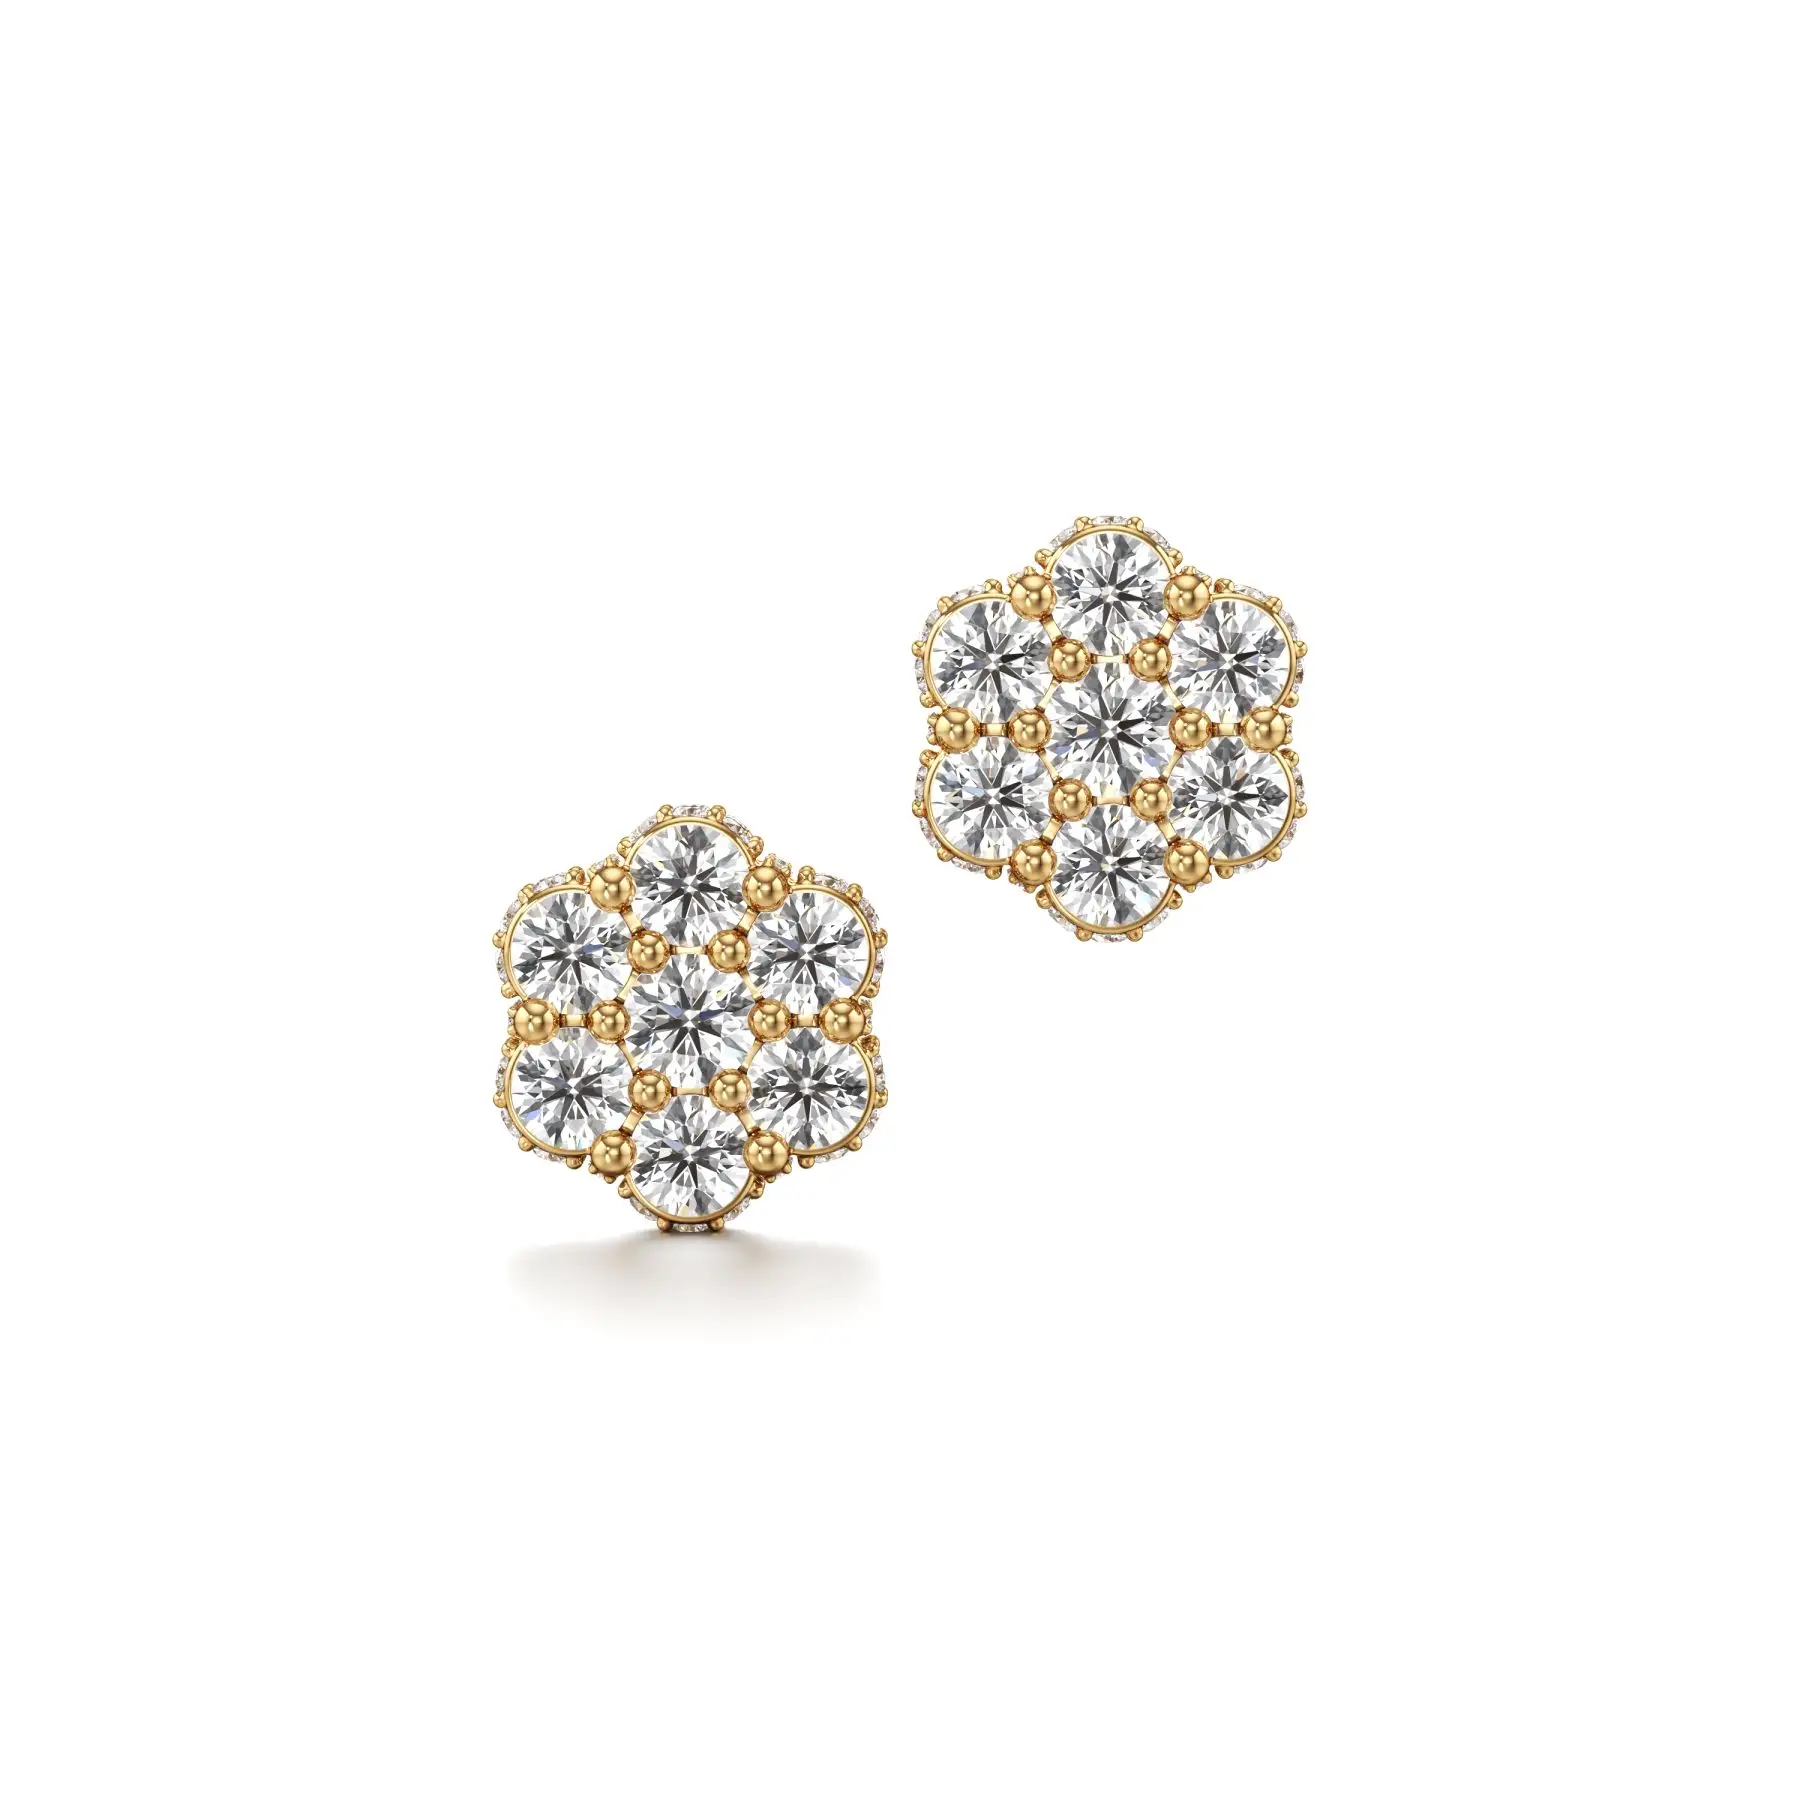 Flashy Flower Cluster Diamond Earrings in Yellow 10k Gold